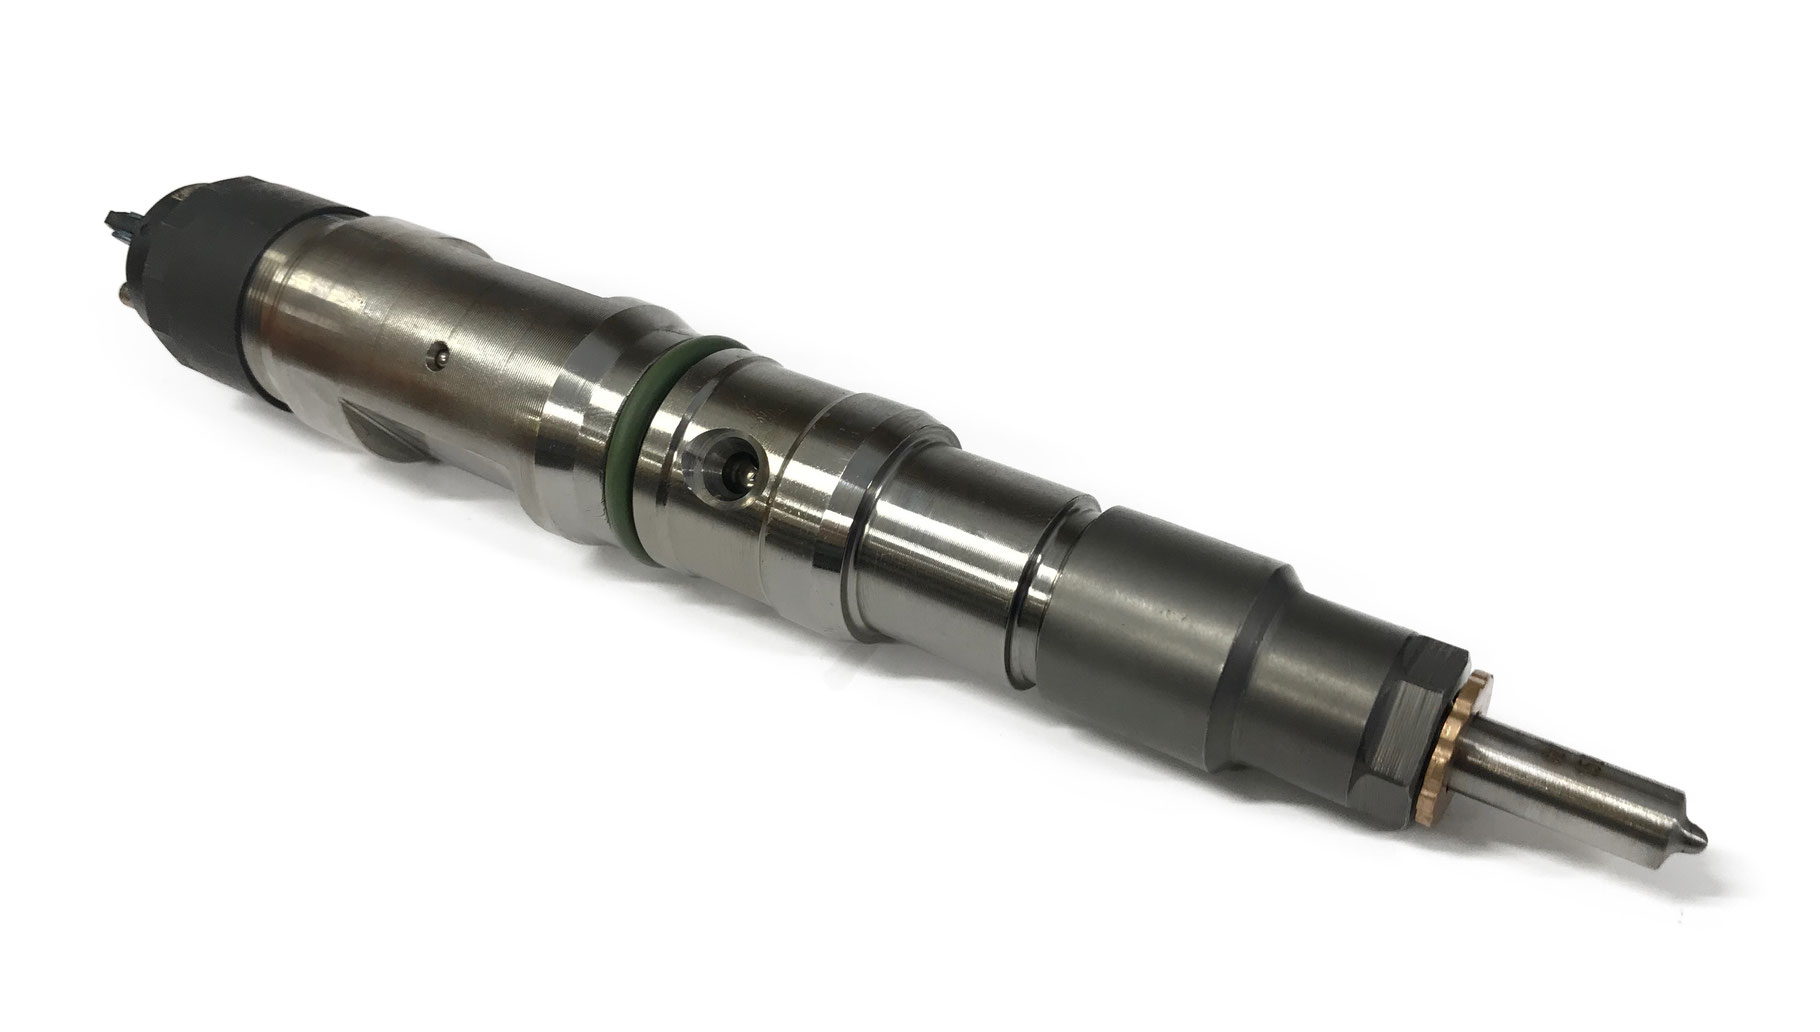 CR Injektoren NKW - Shop für Diesel-Komponenten und Bosch-Elektrowerkzeuge